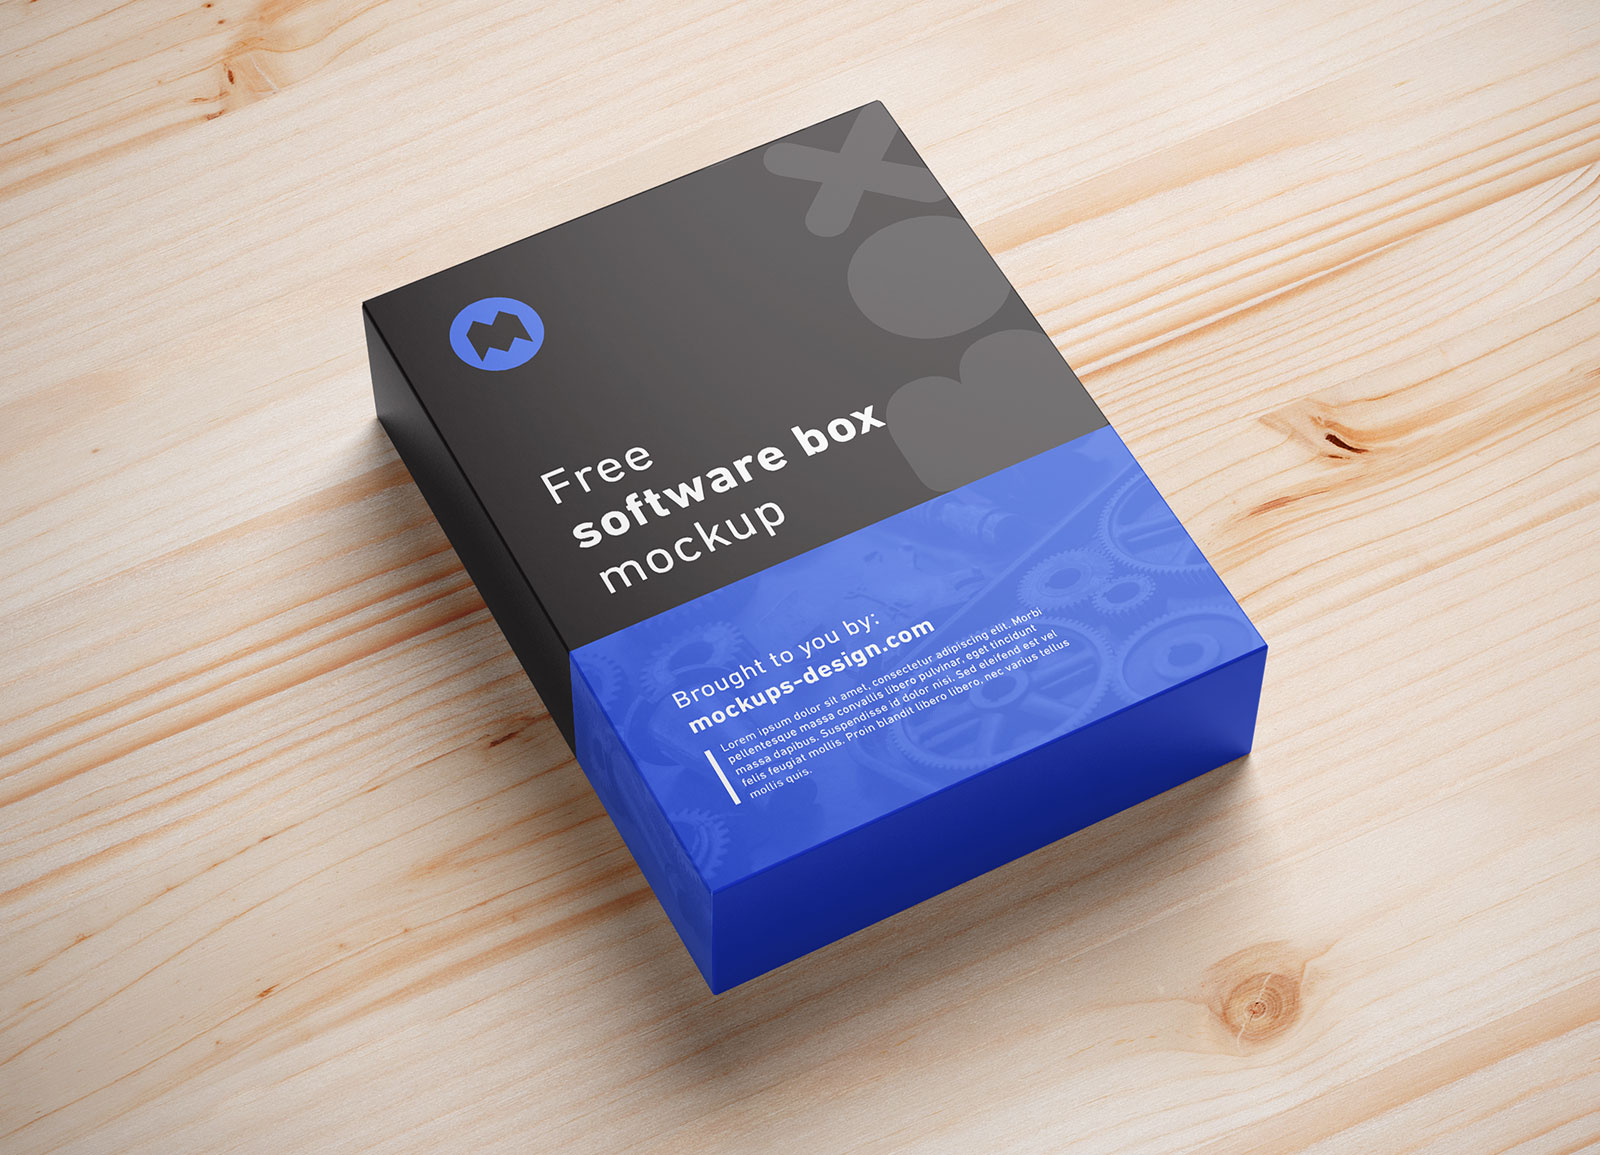 Free-Software-Box-Packaging-Mockup-PSD-4